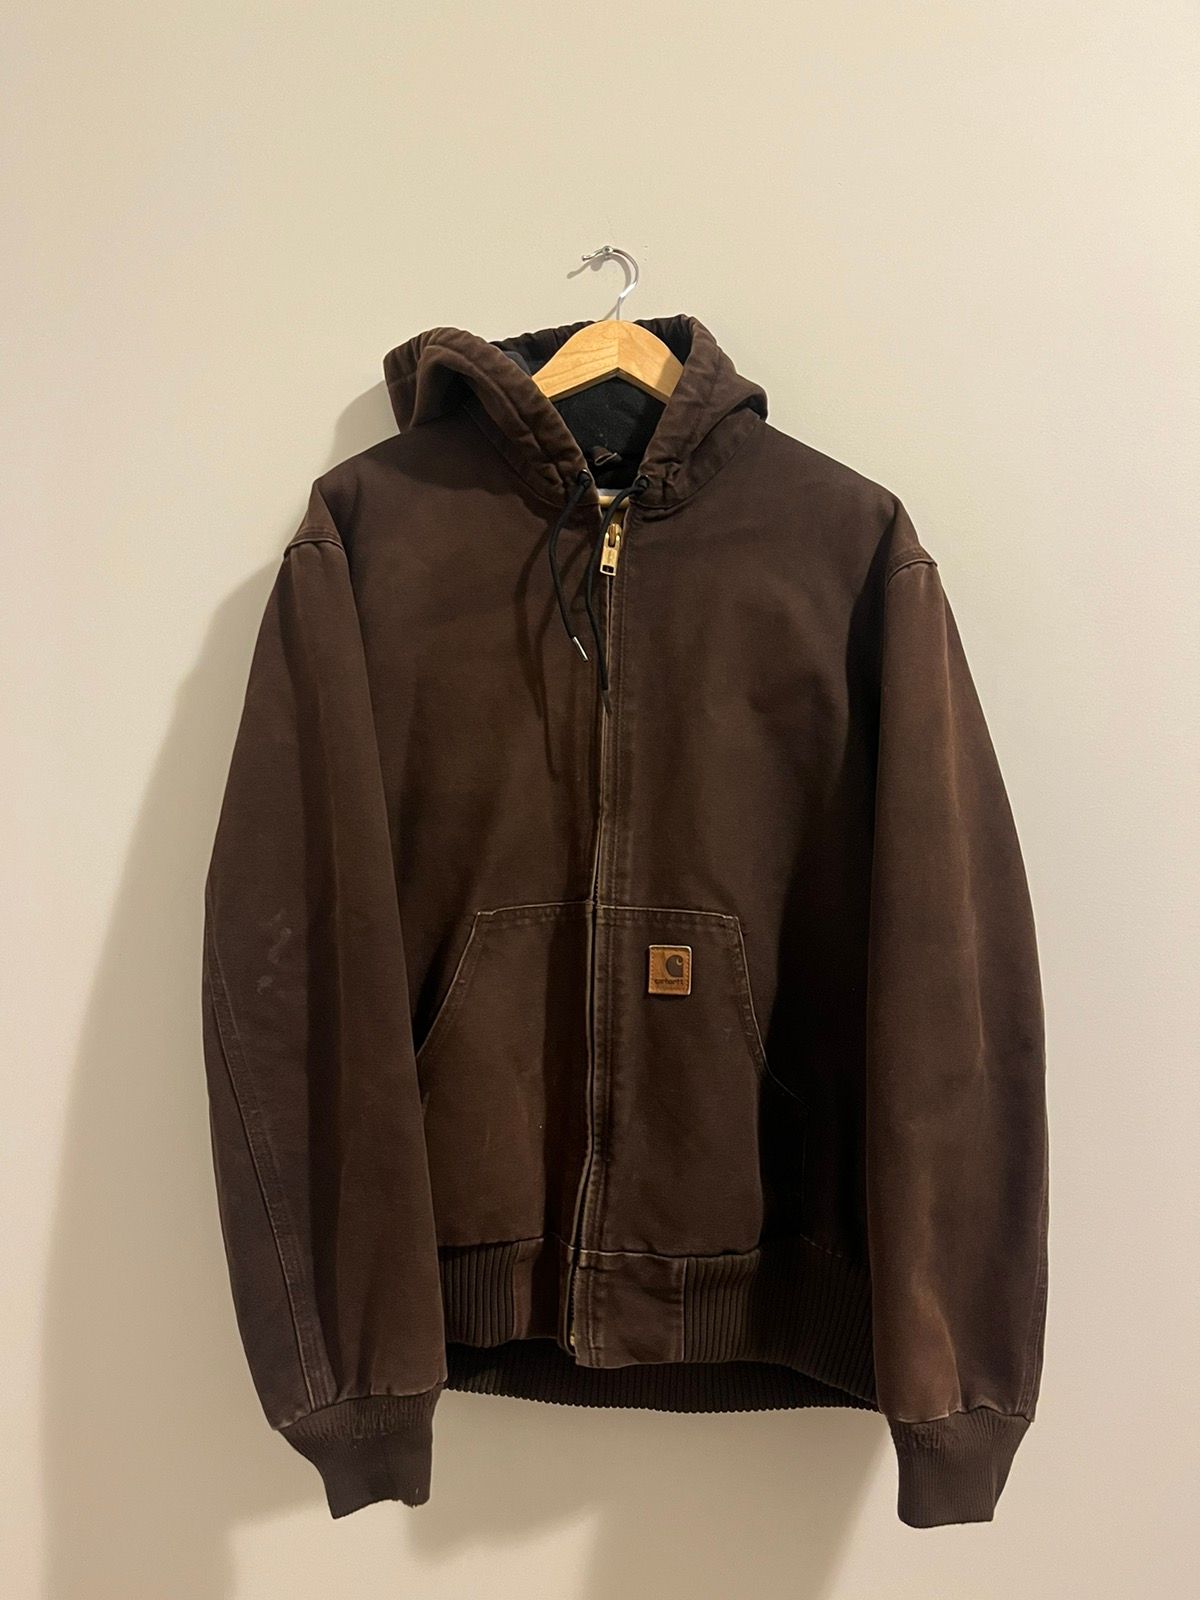 Pre-owned Carhartt X Vintage Brown Carhartt Hooded Jacket